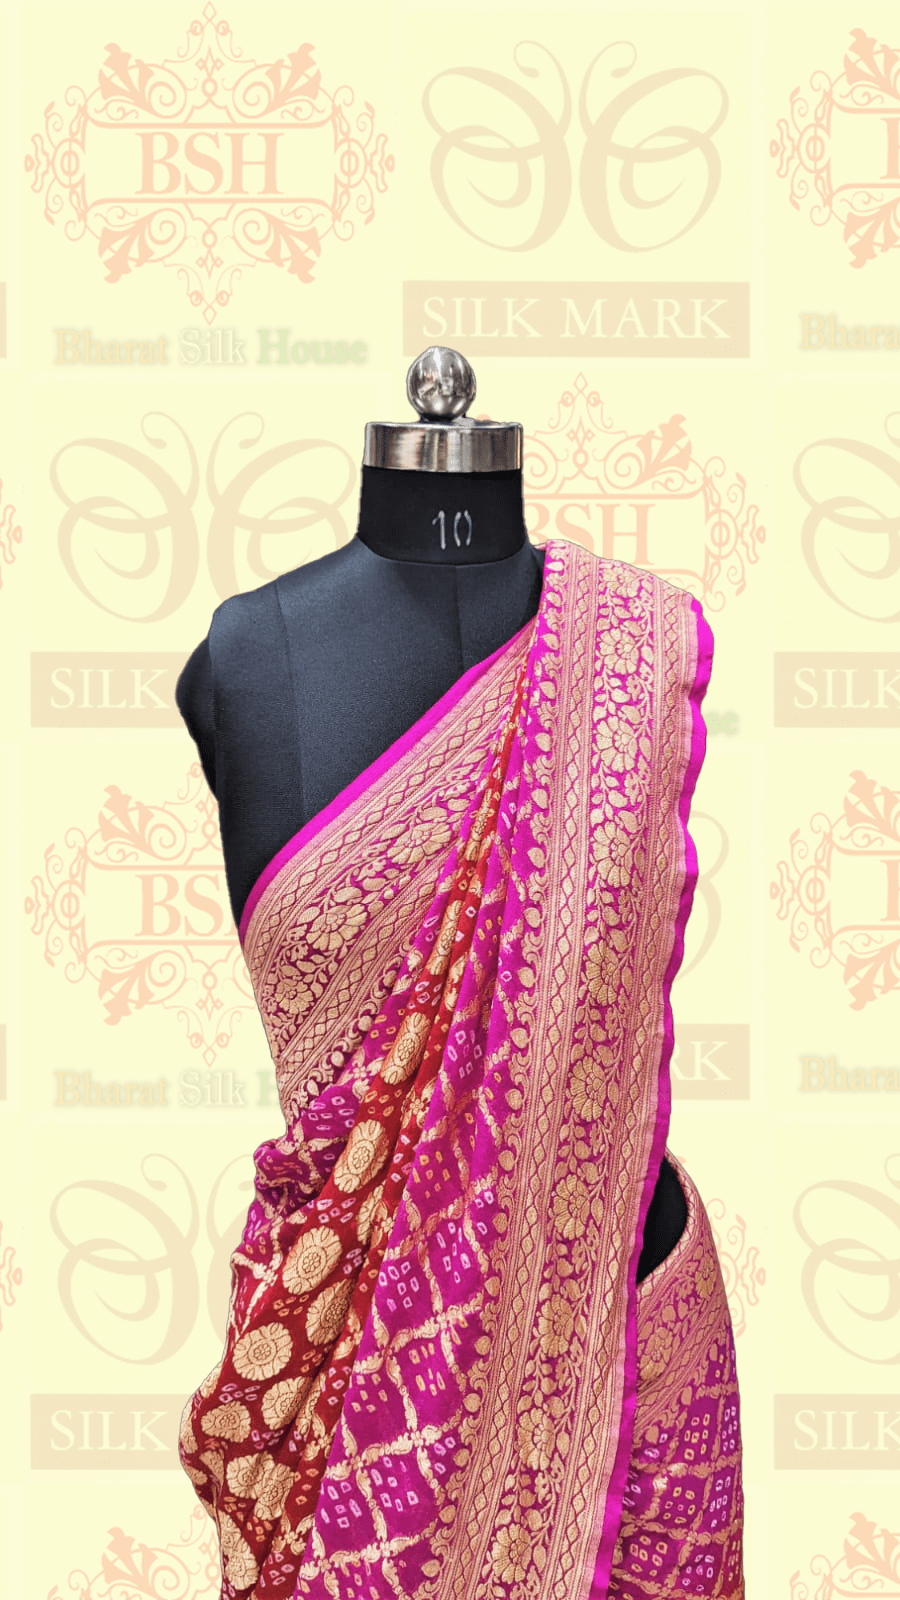 Pure Georgette Handloom Banarasi Bandhej Saaree In Dual Shades Of Red/Pink Bandhej Bharat Silk House